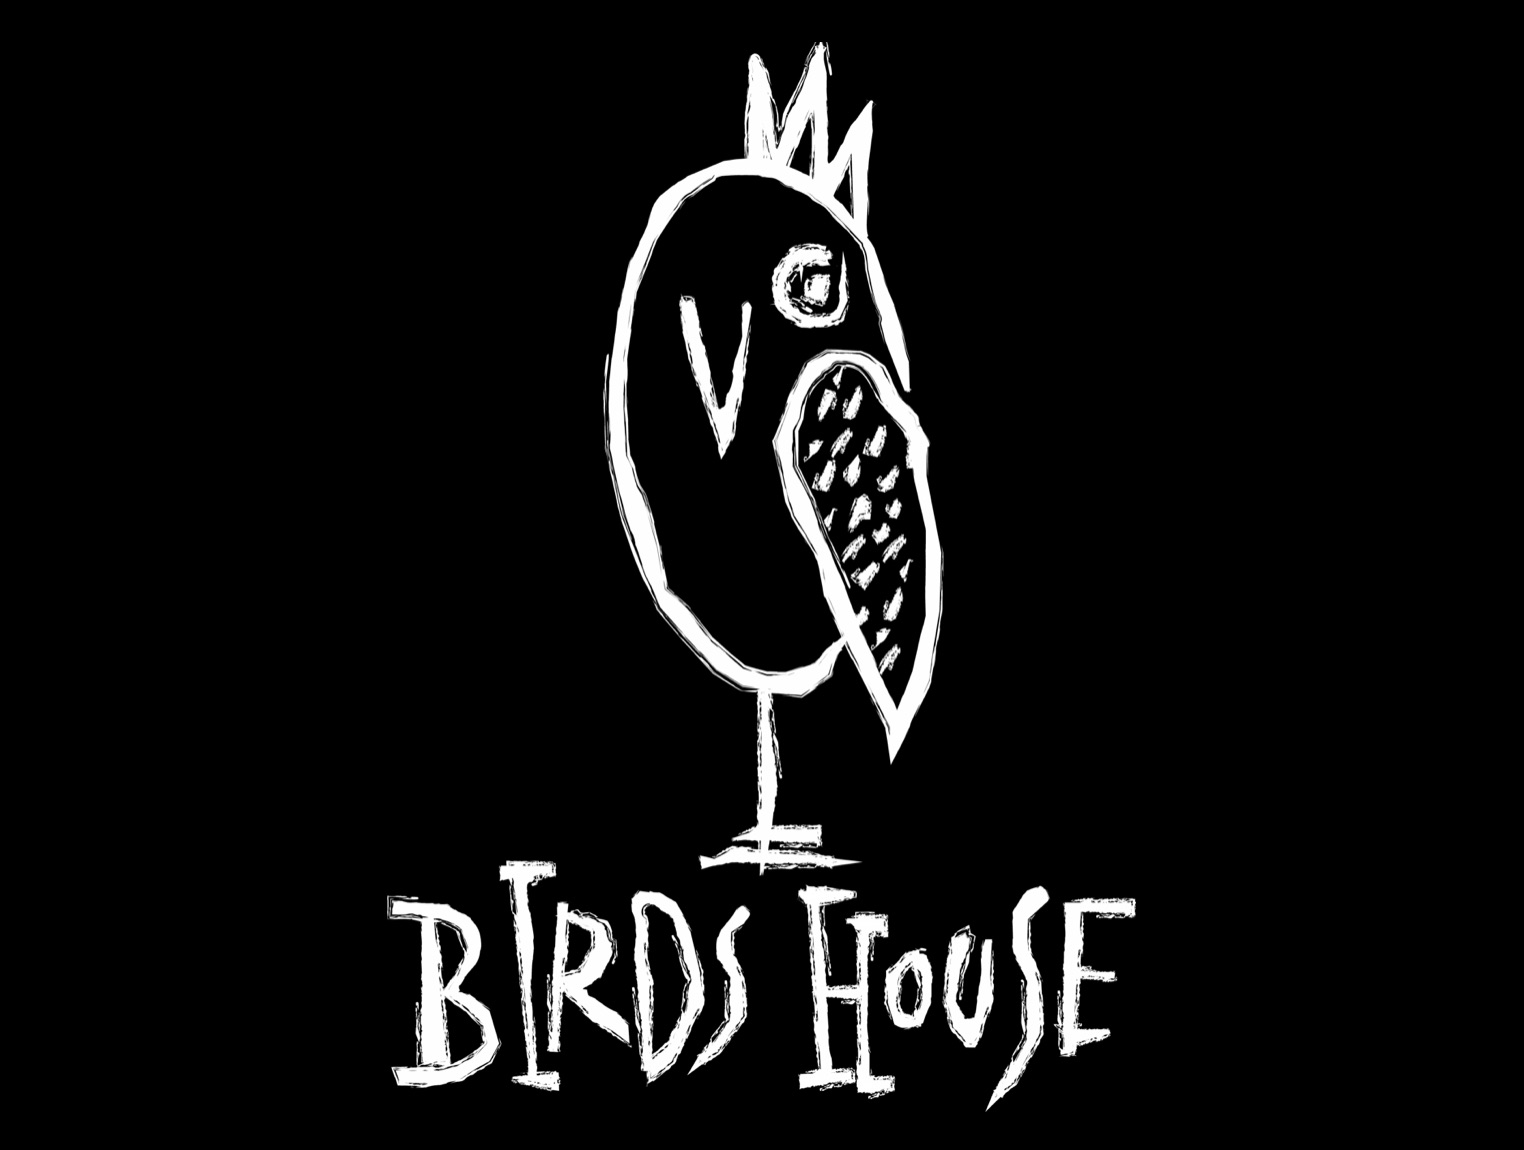 Birds House logo